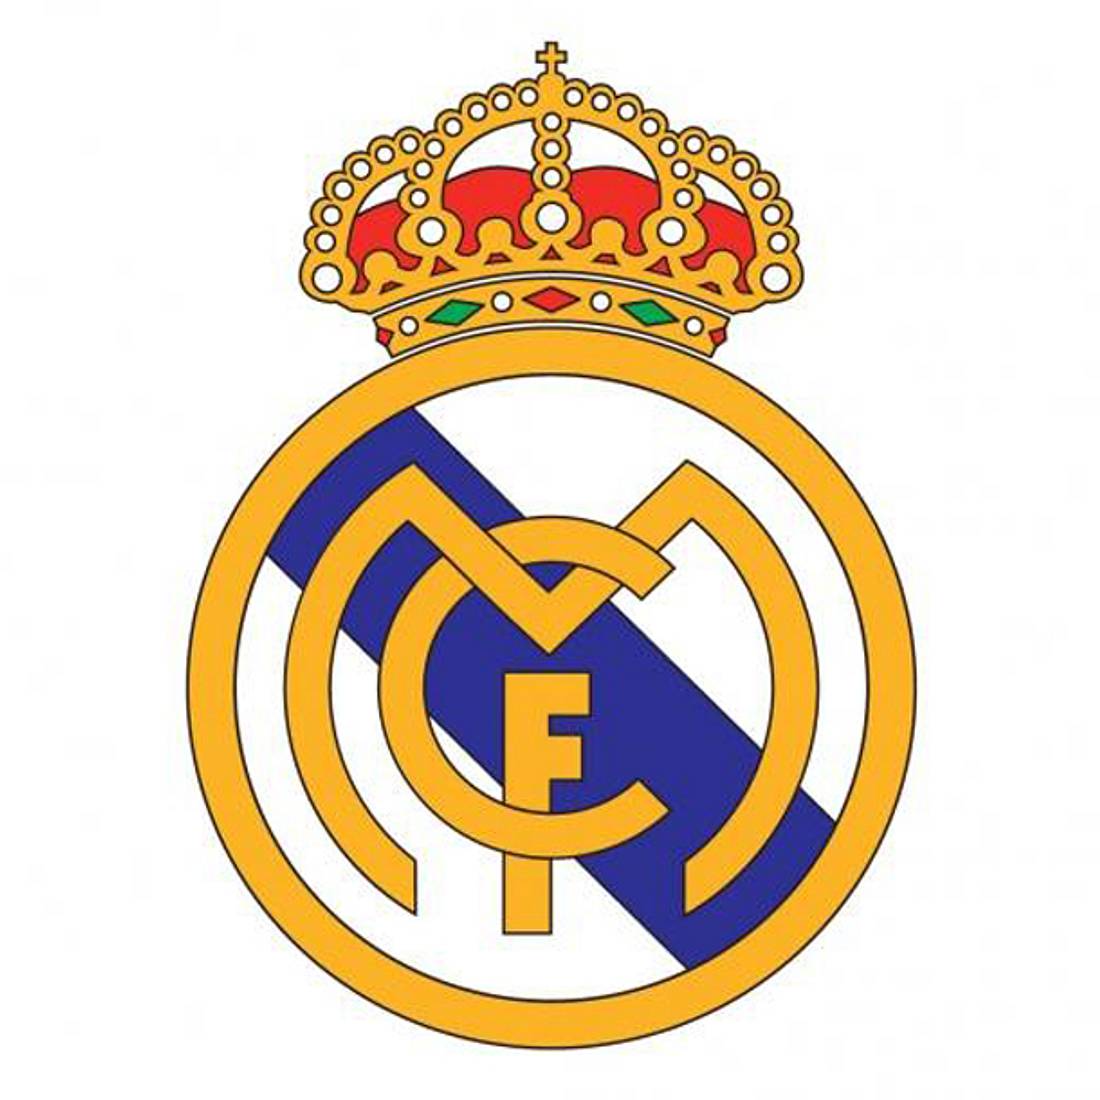 Das neue Logo von Real Madrid wird ohne Christen-Kreuz abgebildet.